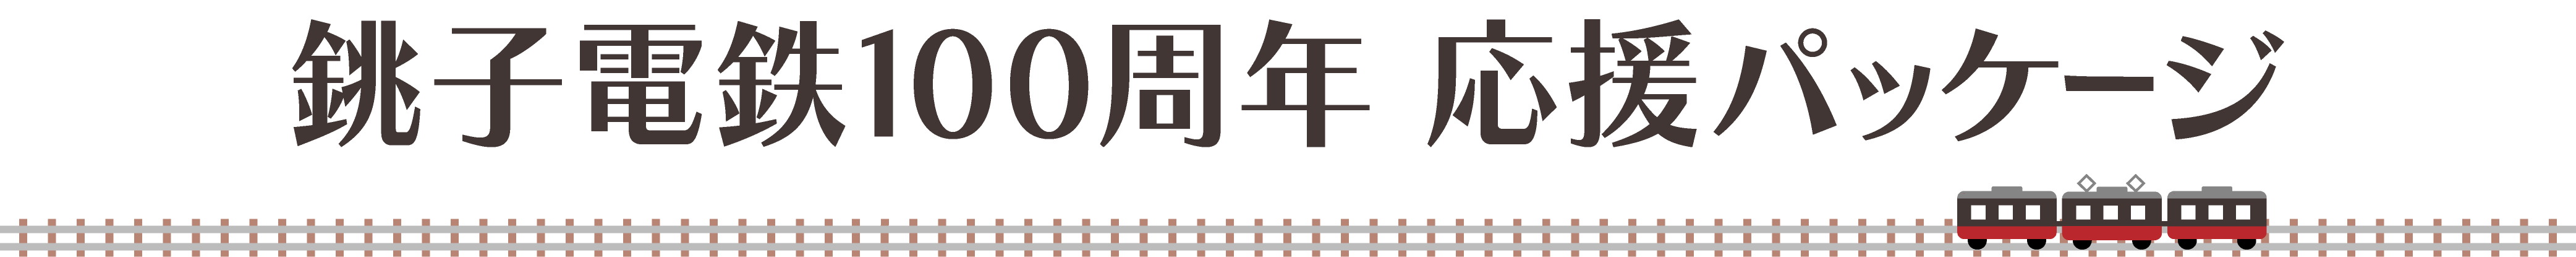 銚子電気鉄道100周年応援パッケージ